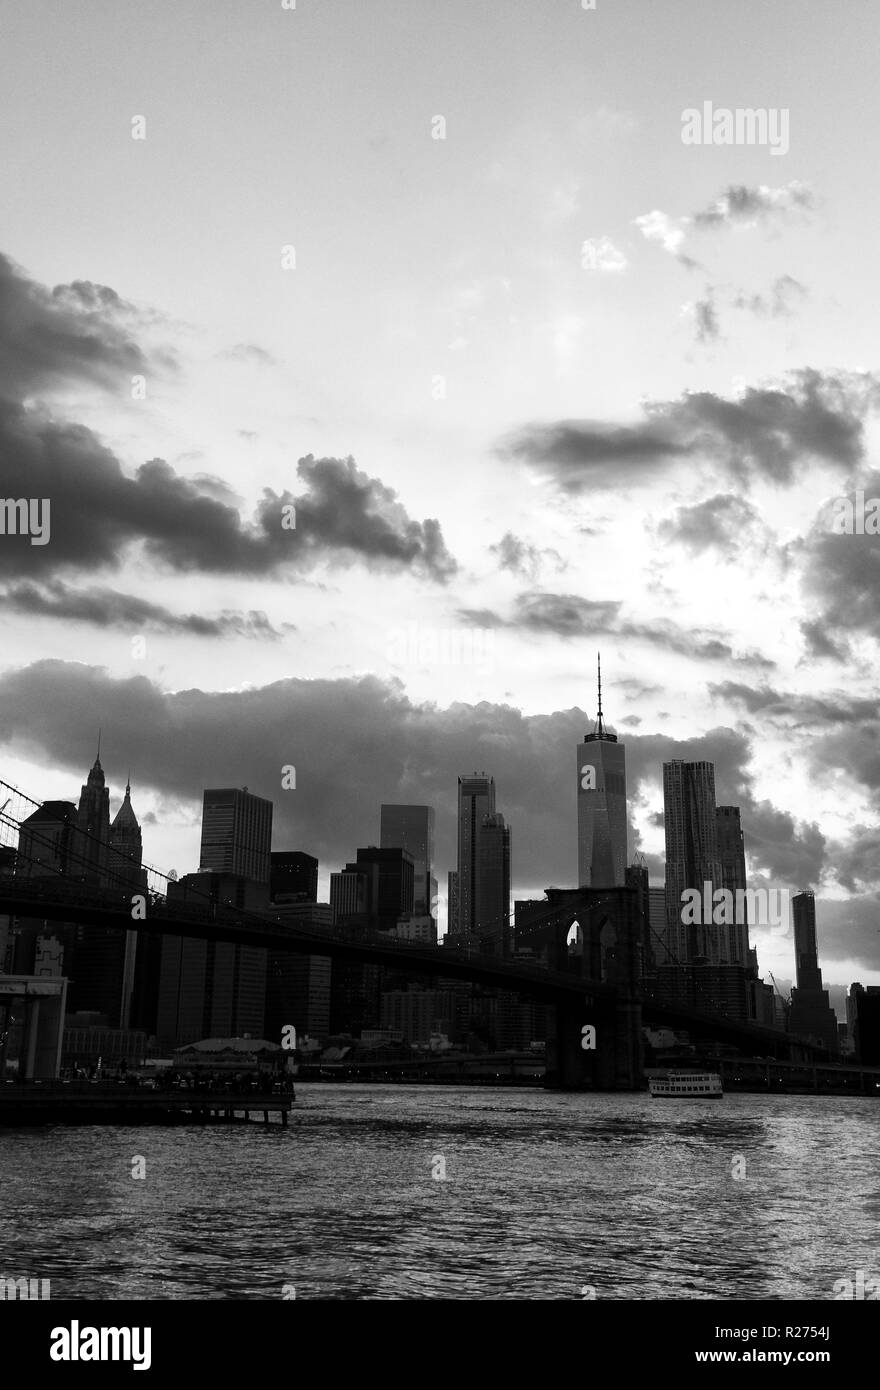 La ville de New York. New York City, le quartier financier de Manhattan vue du pont de Brooklyn Park. Banque D'Images